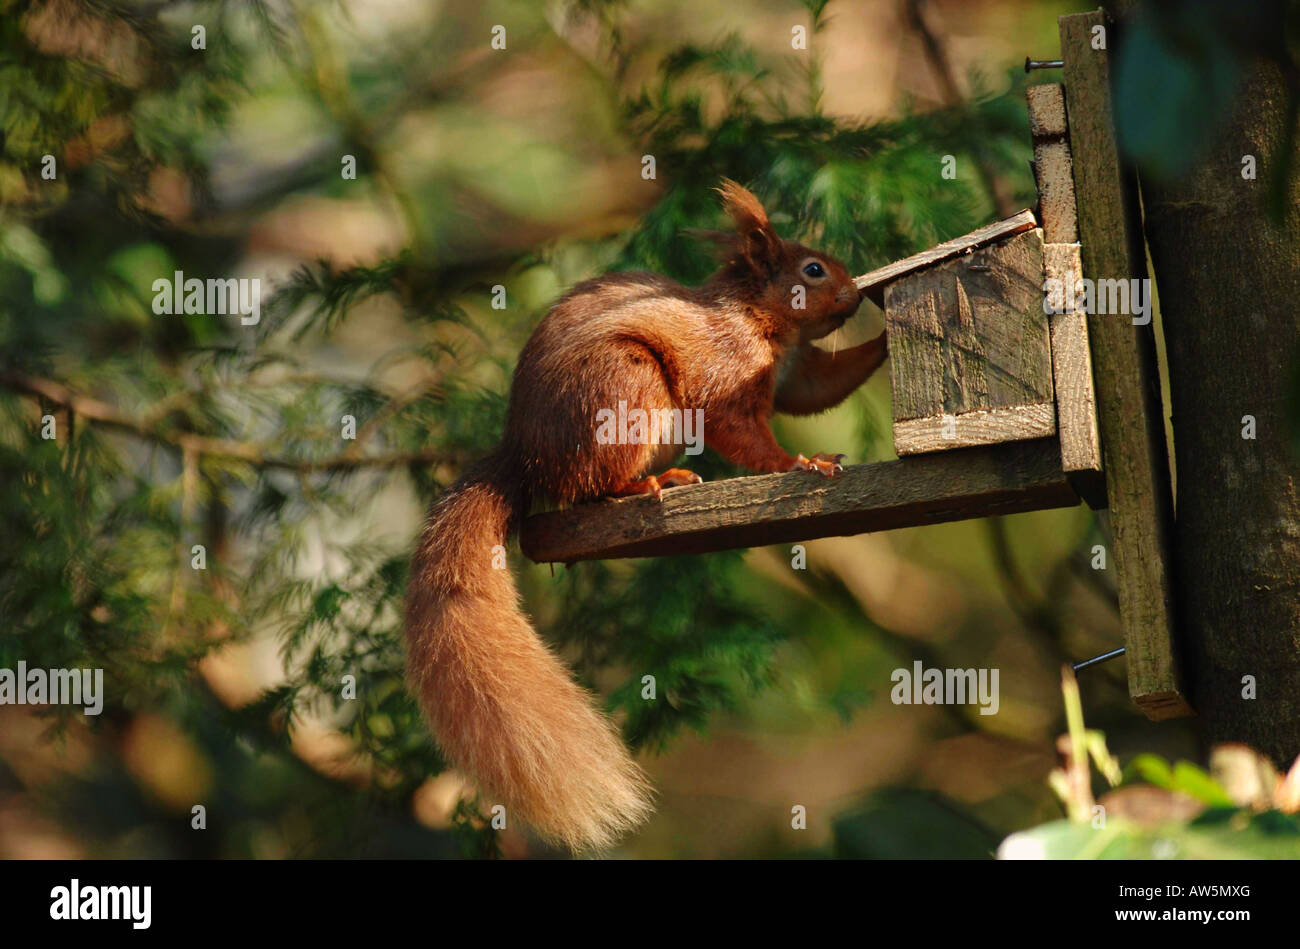 Uno scoiattolo rosso alimenta i dadi sulla sinistra in un alimentatore di scoiattolo. L'animale ha bisogno di aprire l'alimentatore per accedere ai dadi. La serie 2 di 4. Foto Stock